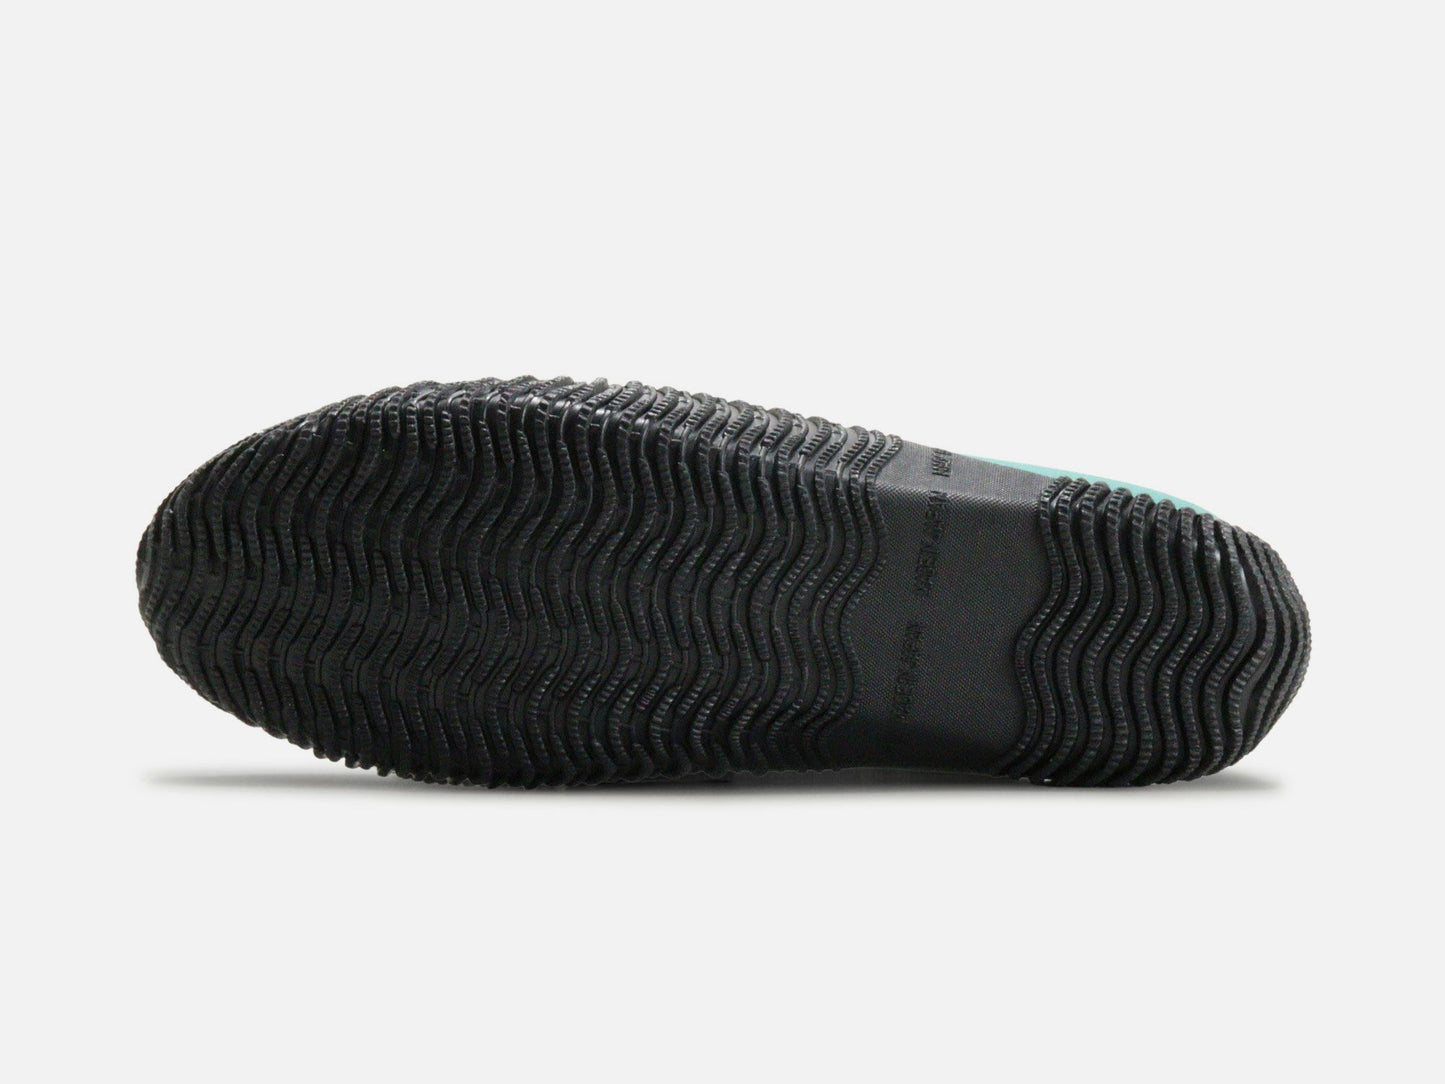 SPINGLE MOVEのスニーカー「SPM-619 Black」の靴底の商品画像